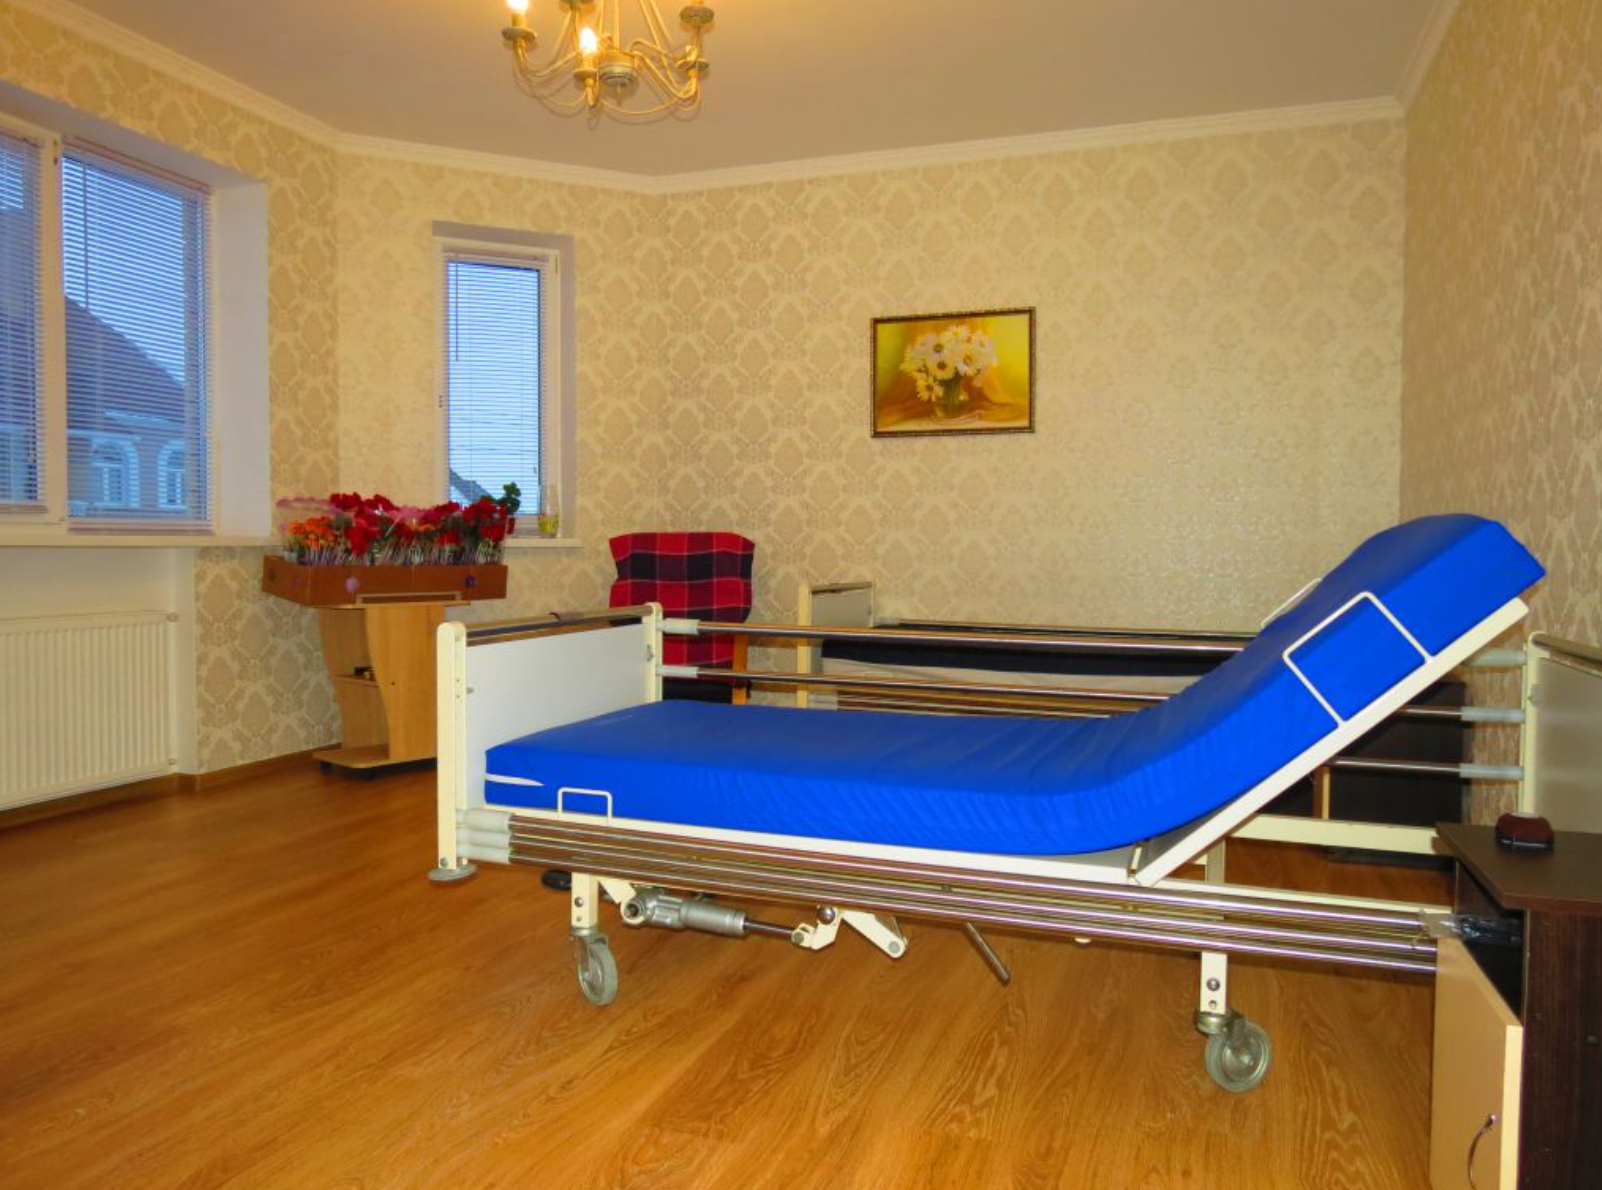 Комната пансионата для лежачих больных. Пансионат для лежачих пожилых людей. Дом престарелых в Киеве. Комнаты в пансионате лежачих больных Германия. Сколько стоит пансионат для лежачих больных доброта